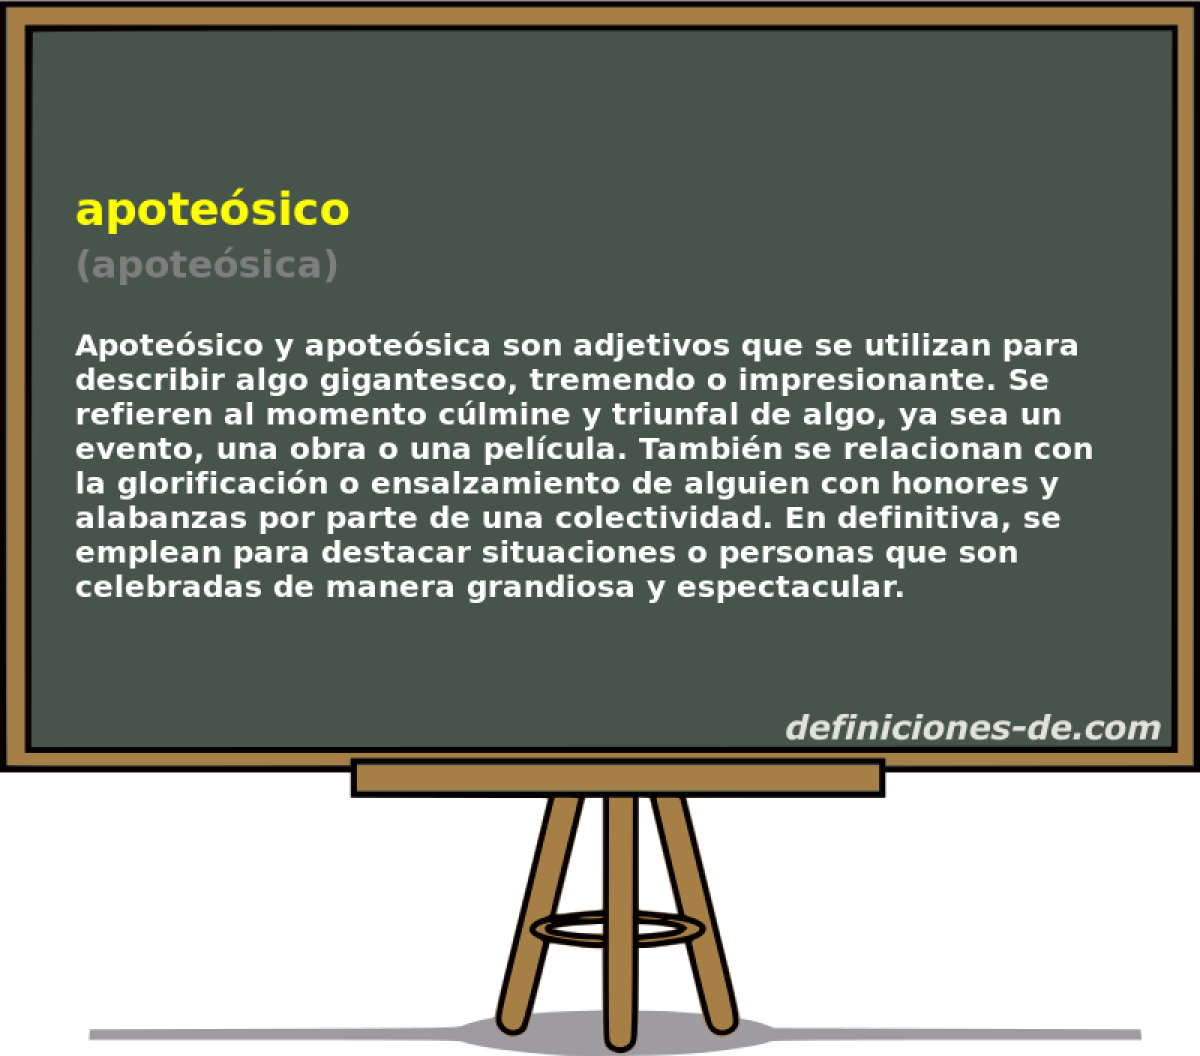 apotesico (apotesica)